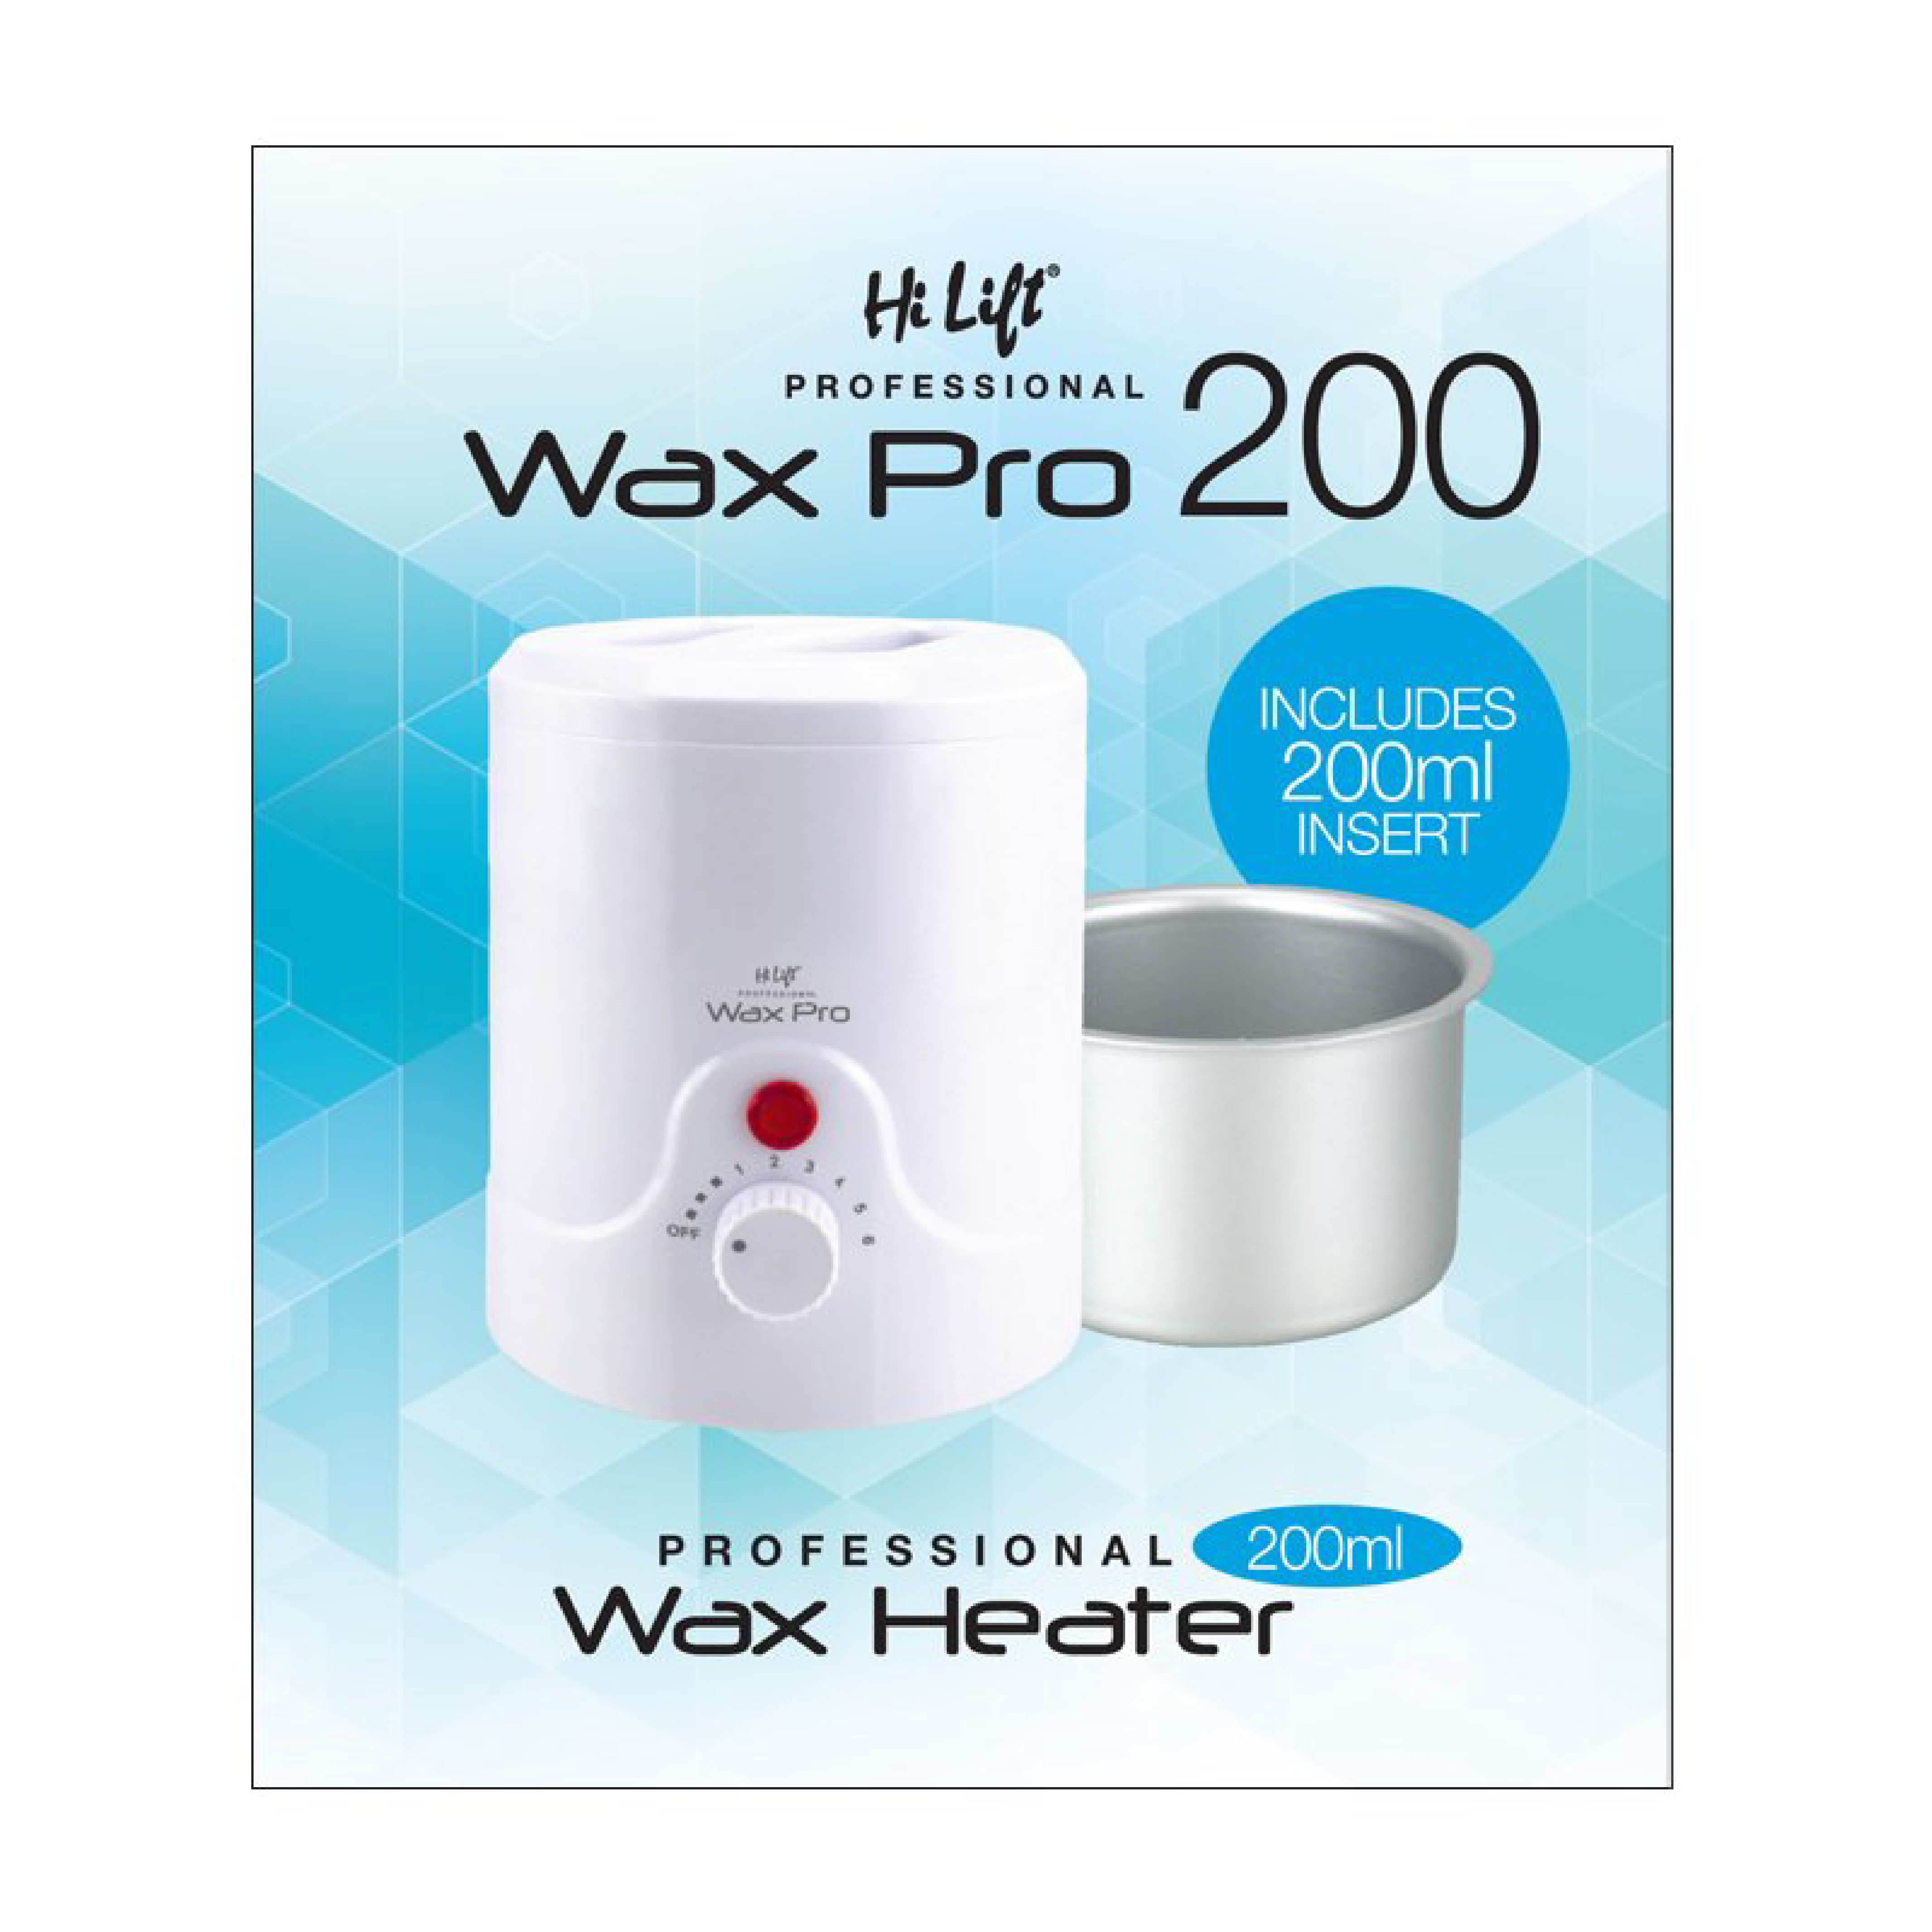 Hi Lift Wax Pro 200 Professional Wax Heater - White